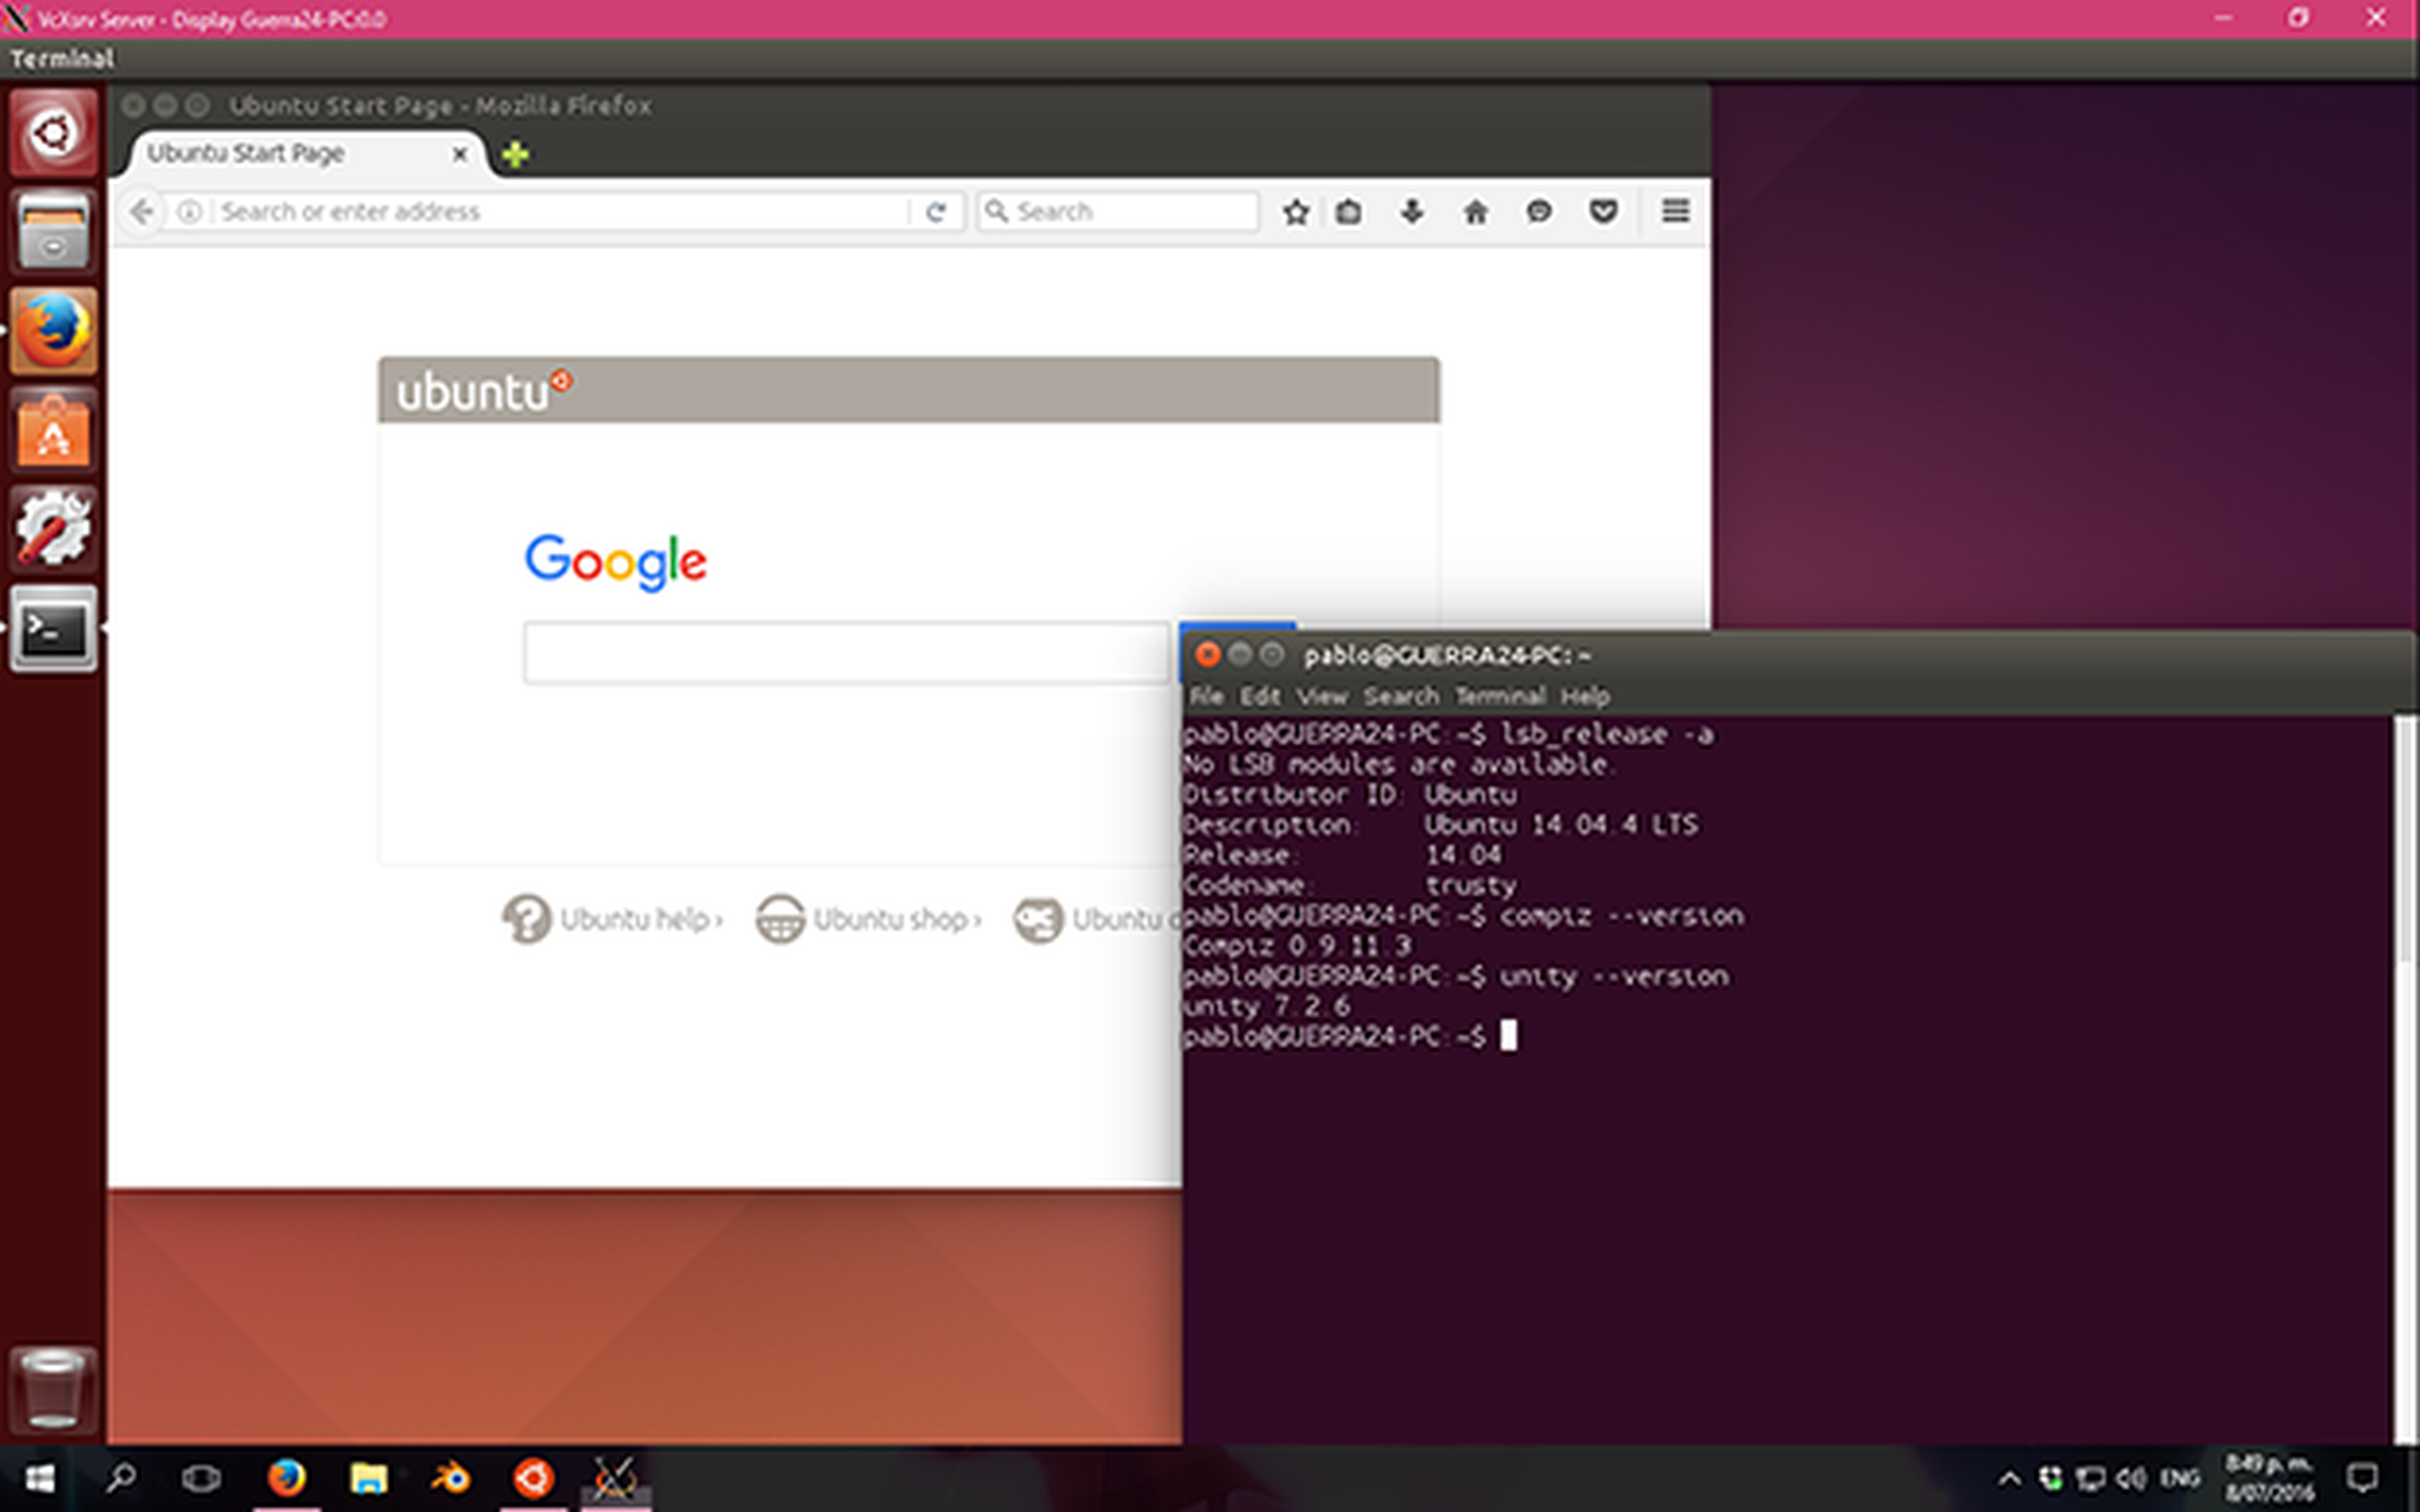 Consiguen ejecutar Unity de Ubuntu en Windows 10